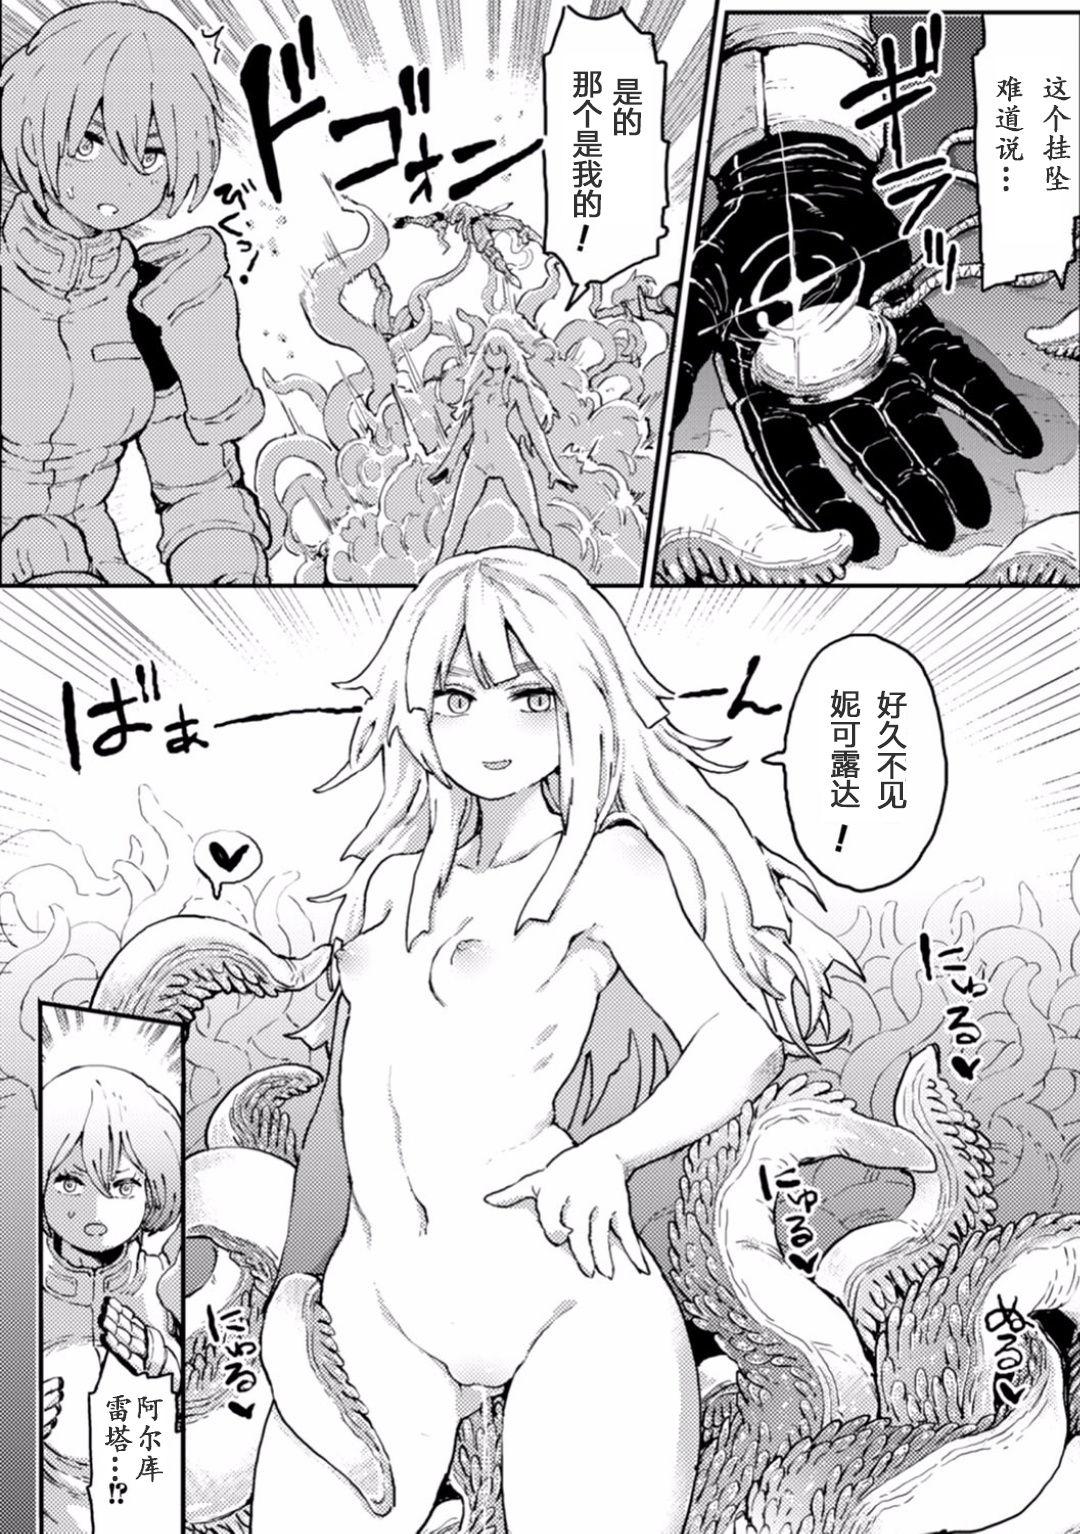 Hardcore Fucking 2D Comic Magazine Shokushu ni Kiseisareshi Otome no Karada Vol. 1 Moms - Page 8